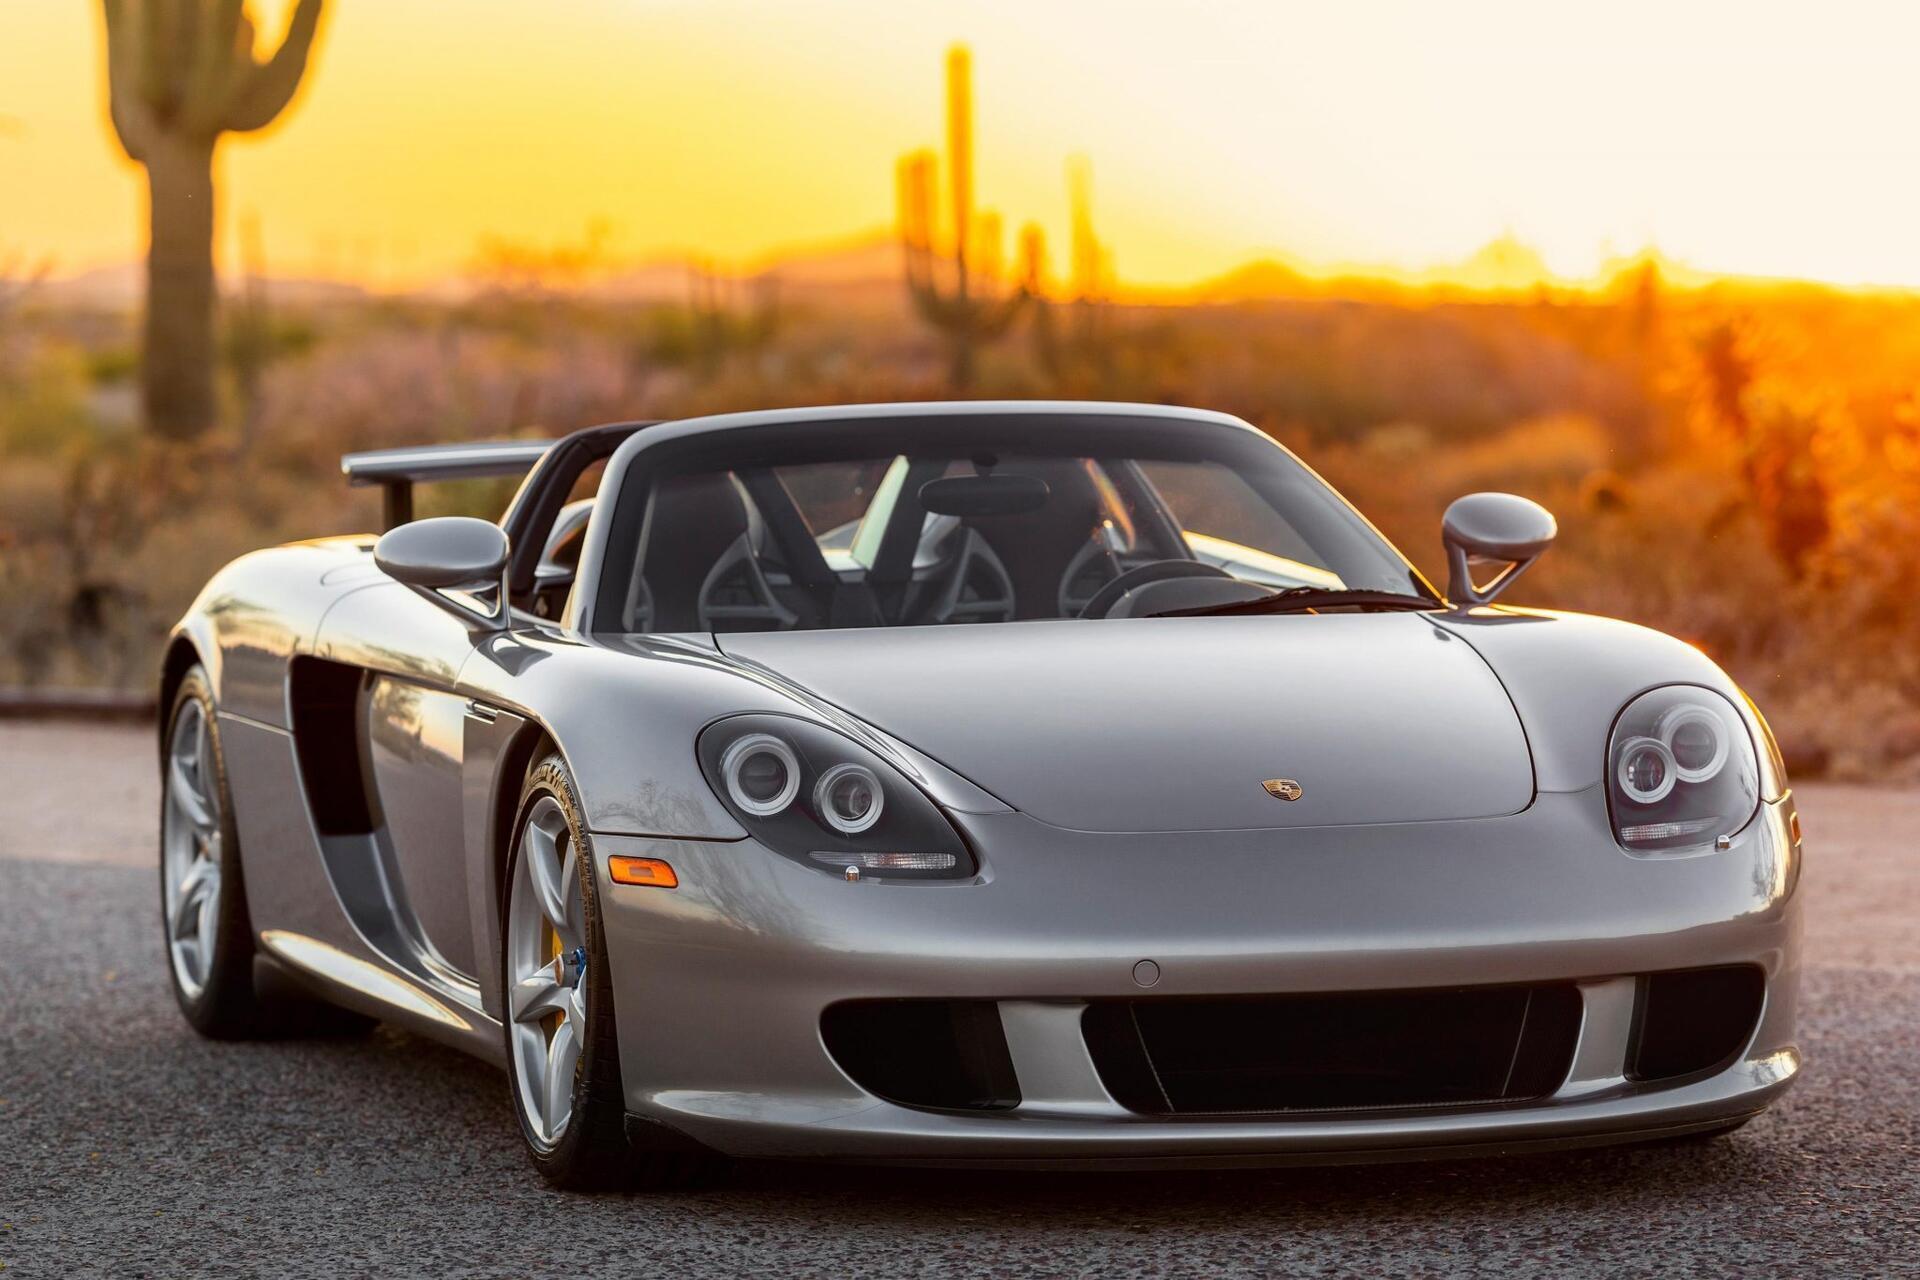 Porsche Carrera GT hàng hiếm được bán đấu giá lên đến 1 triệu USD